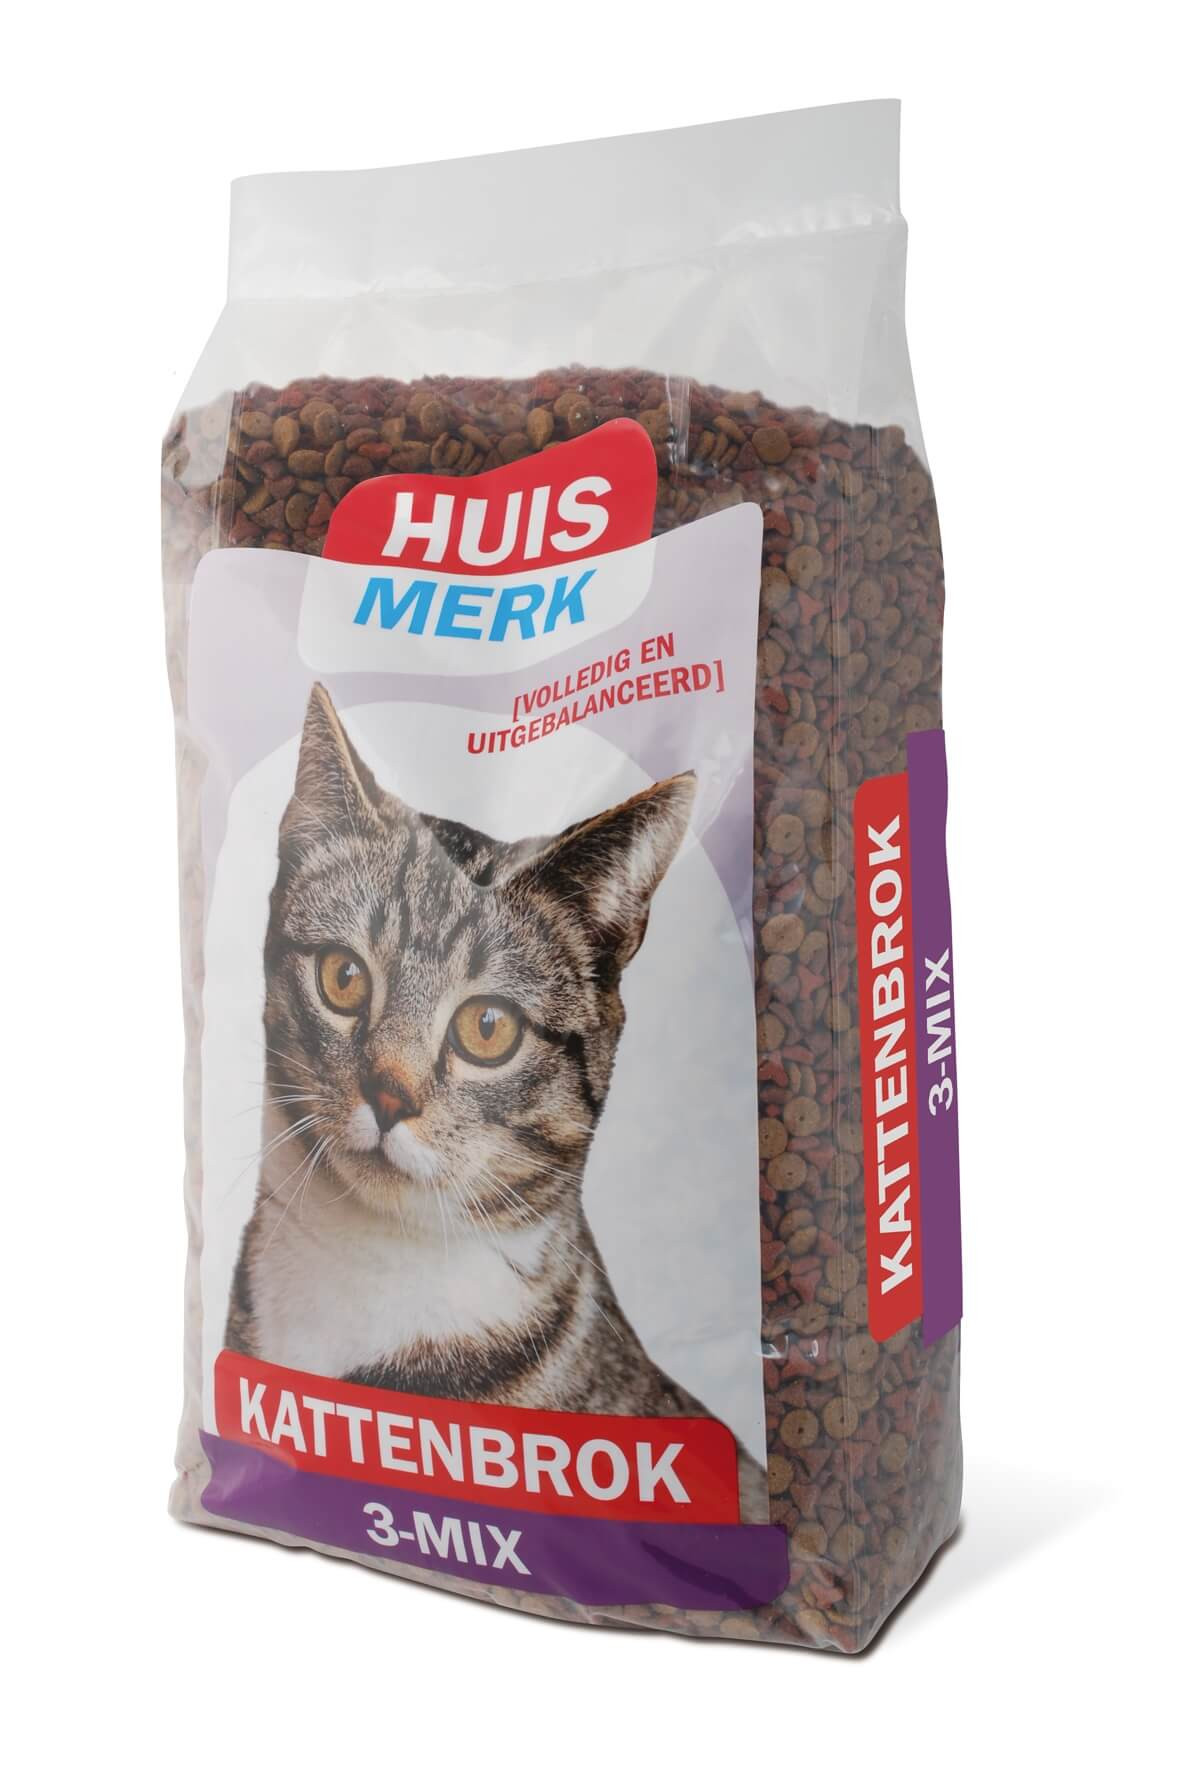 Huismerk Krokant Kattenbrok 3-Mix 10kg € 24.95